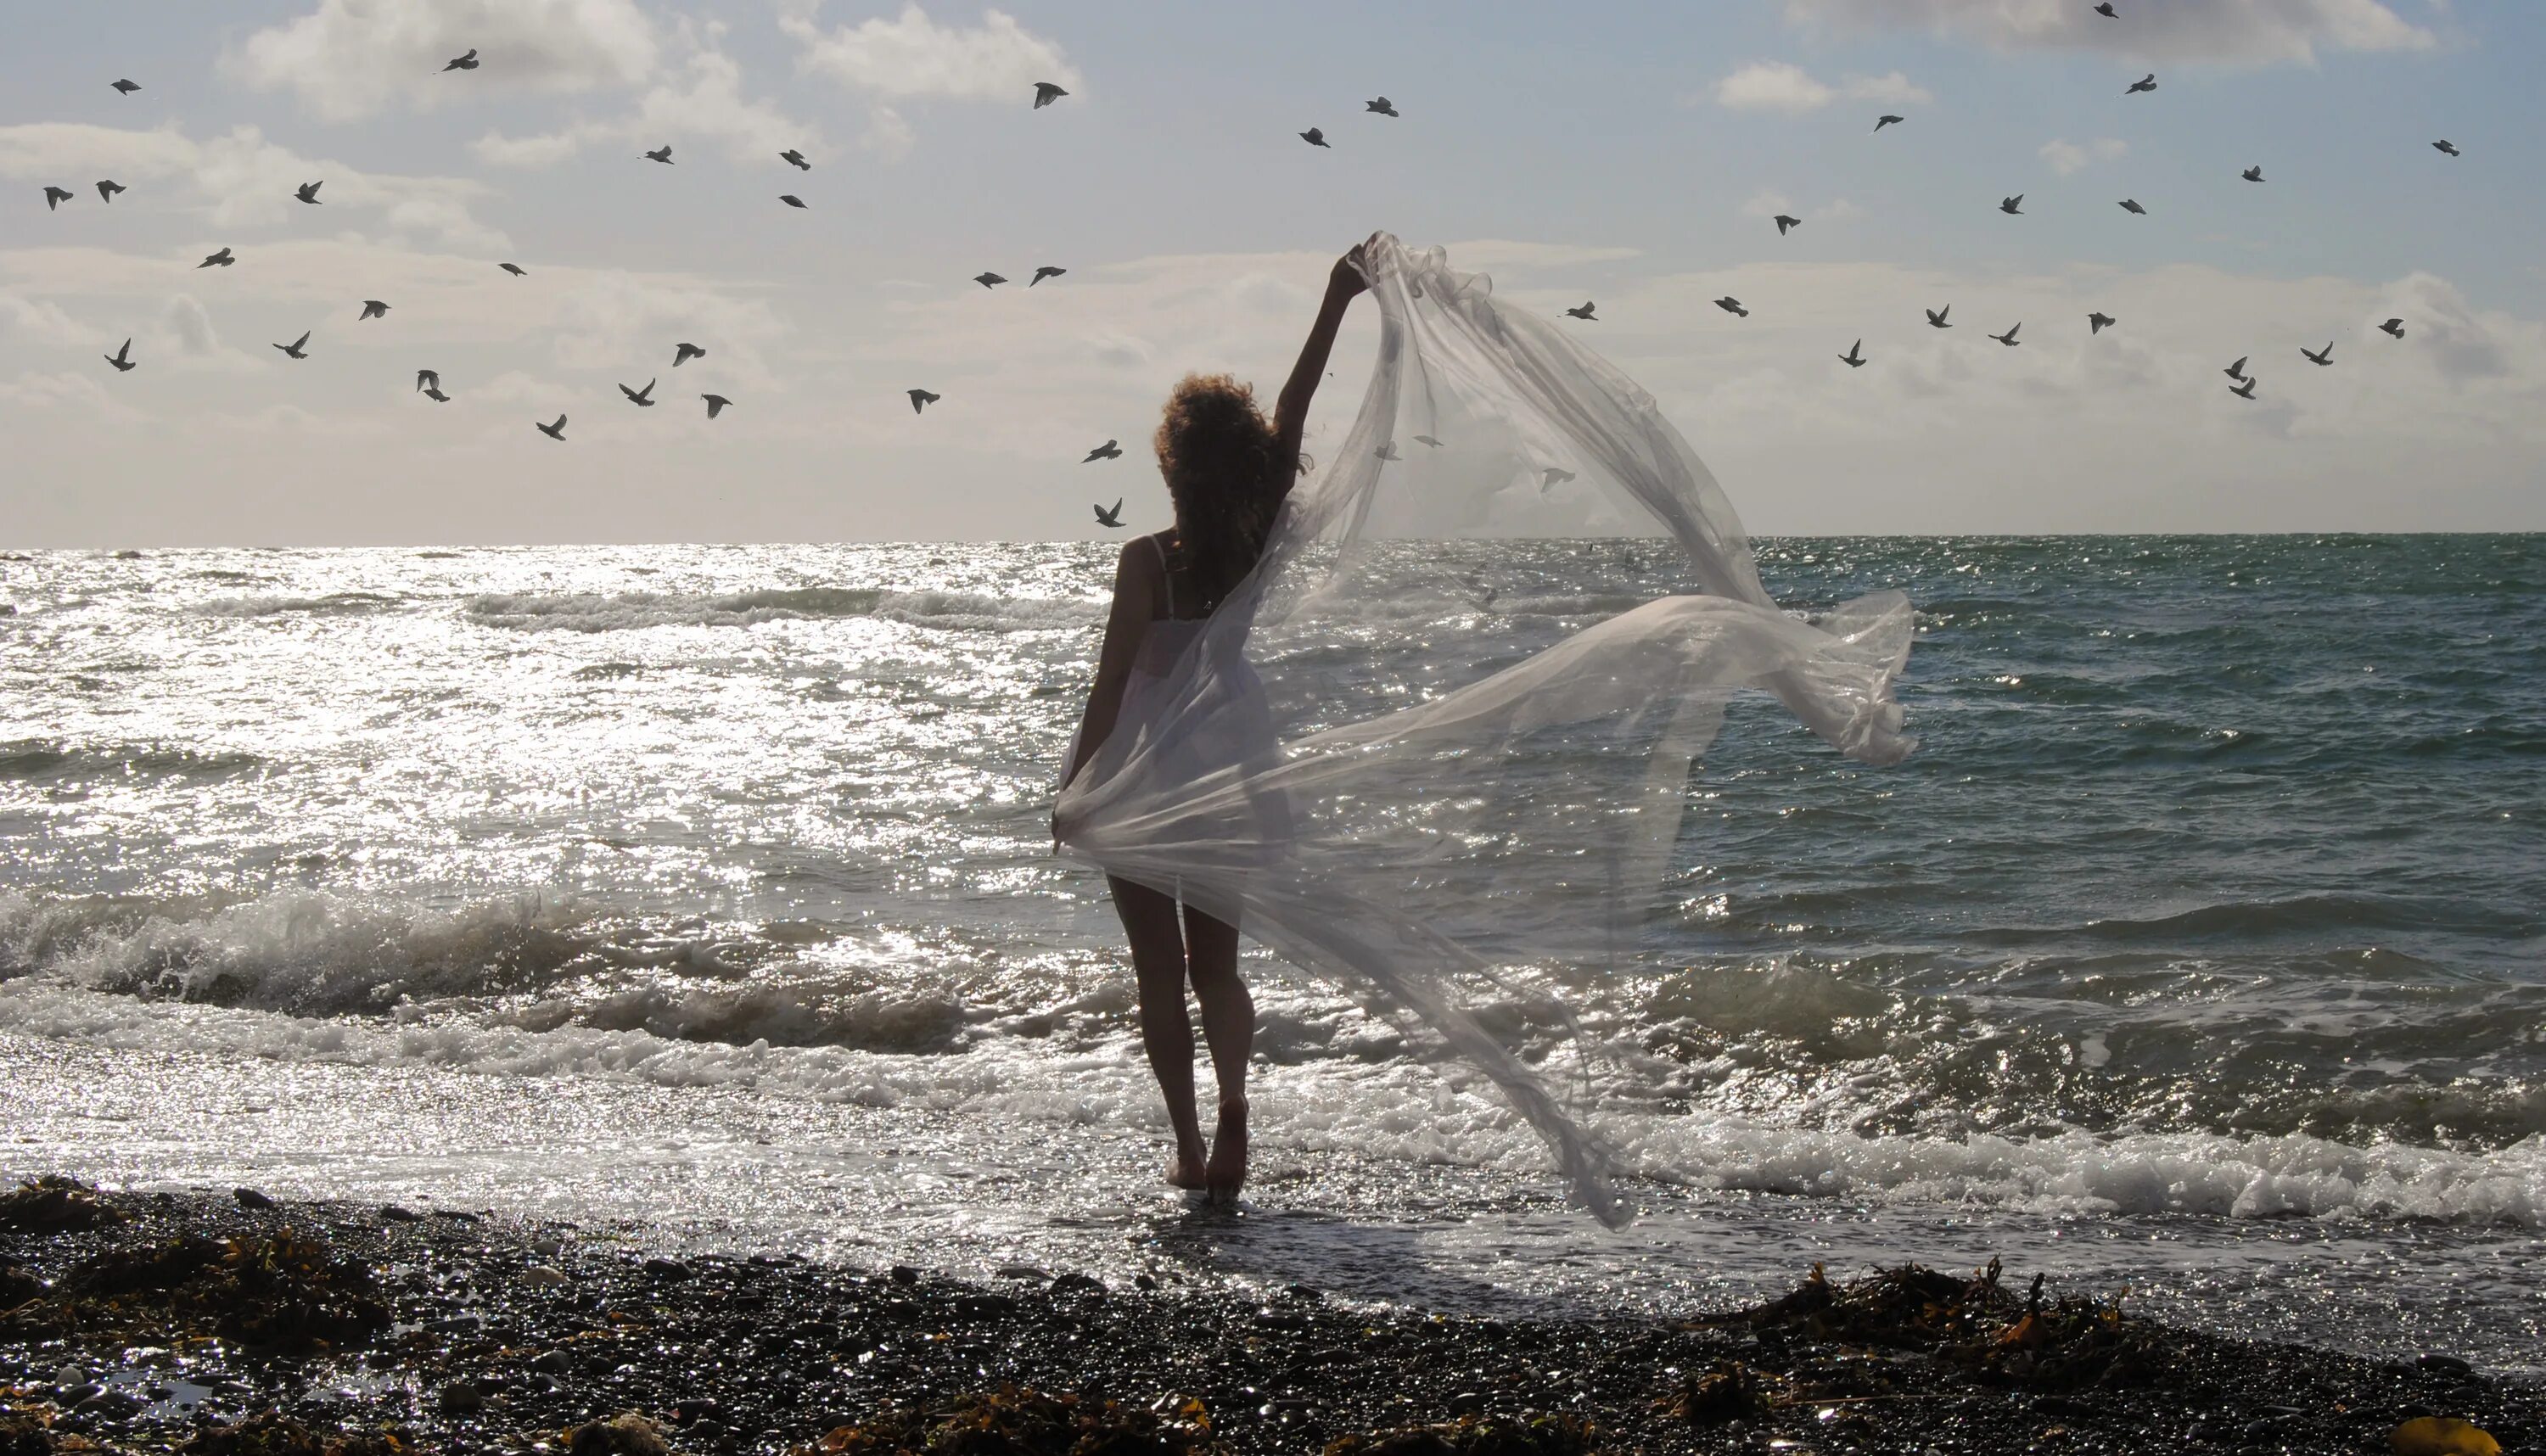 Словно ветер вода песня. Море птицы девушка. Девушка-море. Ветер на море. Девушка на ветру.